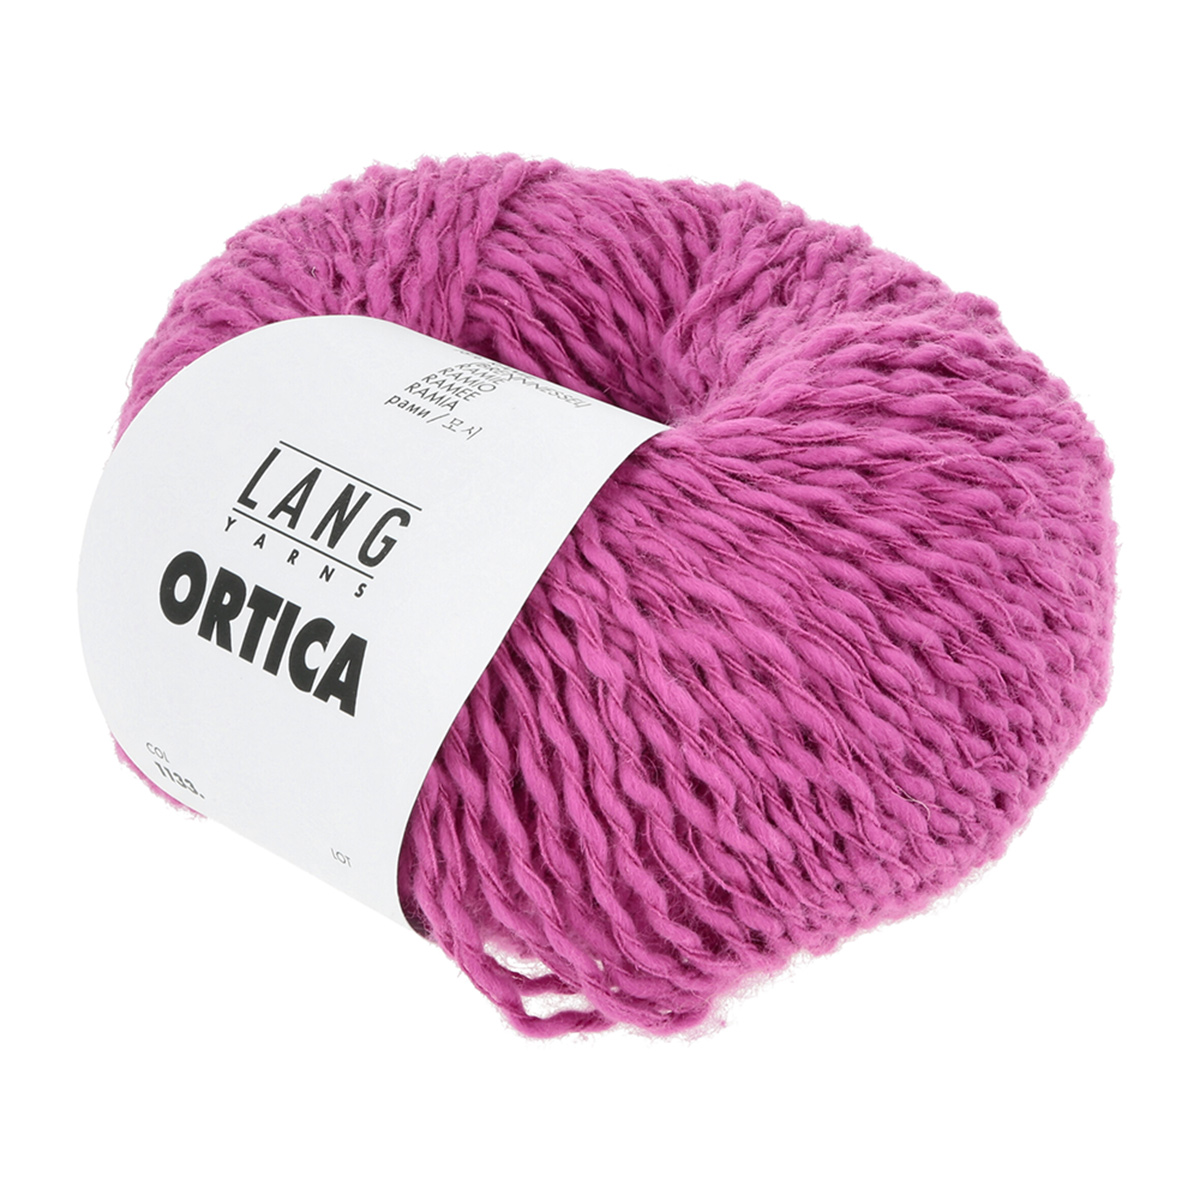 Sommergarn aus 82% Baumwolle und 18% Ramie (Brennnessel) - Ortica von Lang Yarns